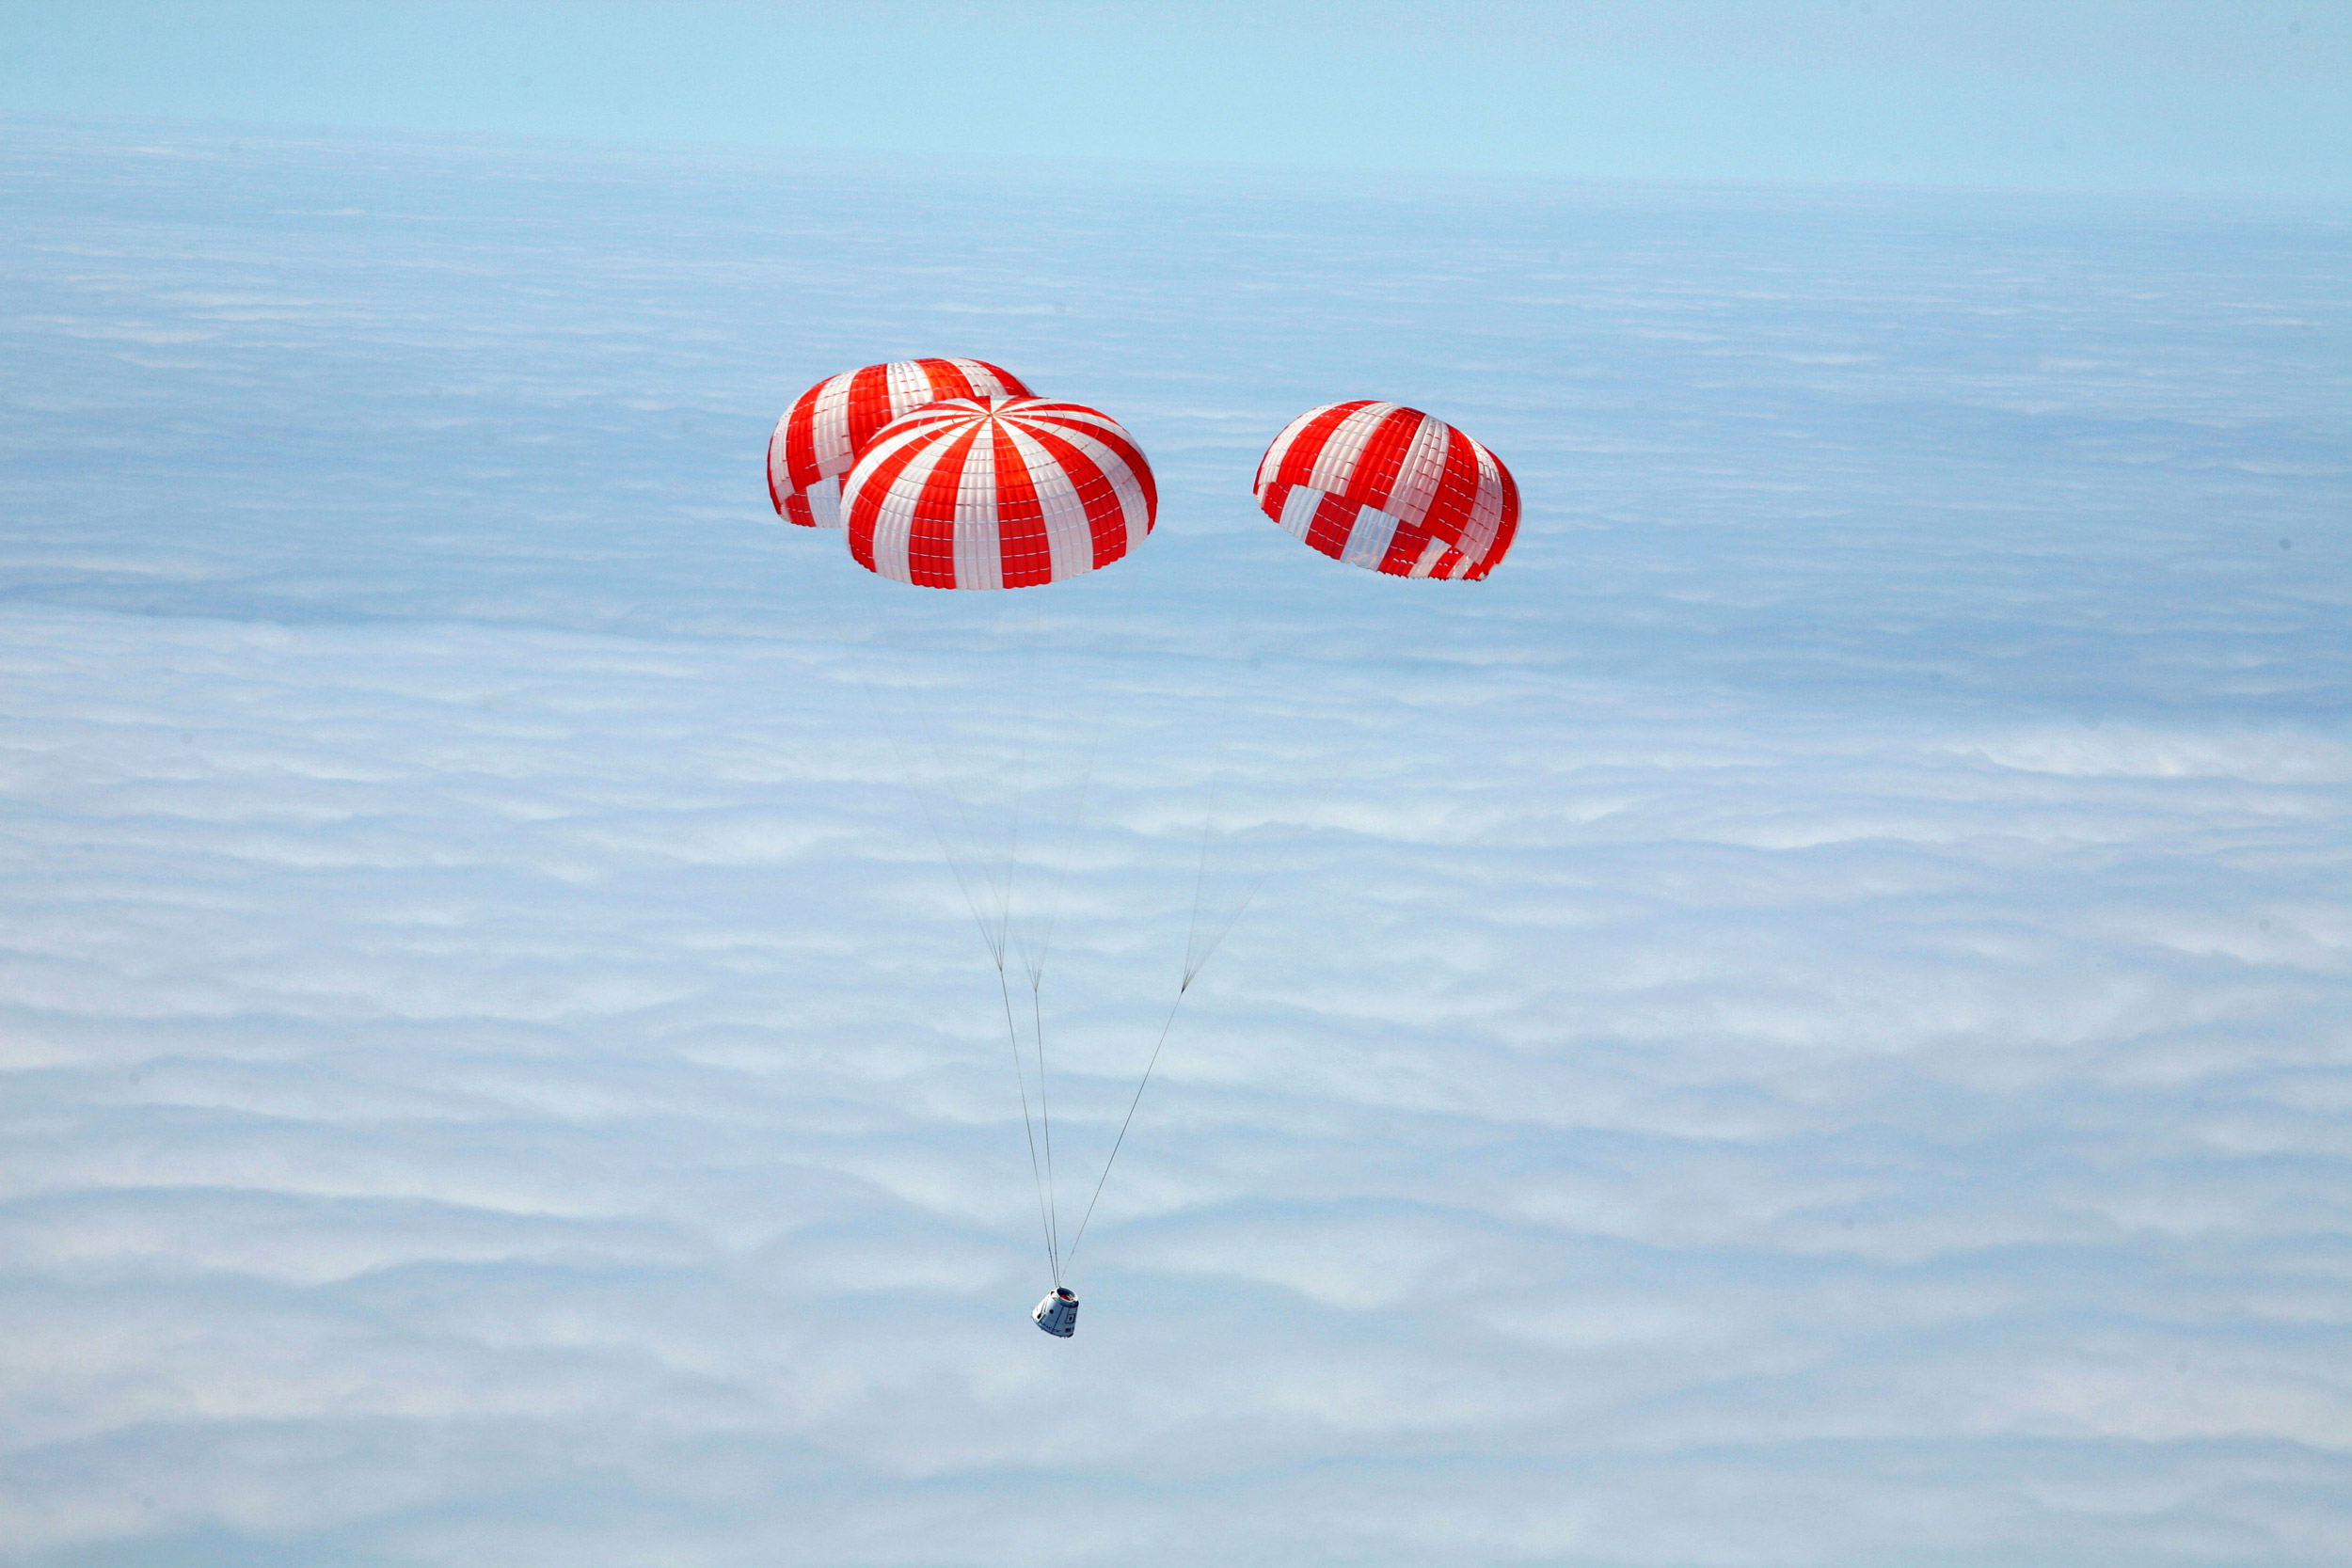 Retour sur Terre de la capsule Dragon, après son premier vol d'essai en décembre 2010. Le premier vol à destination de l'ISS est prévu le 30 avril. © SpaceX